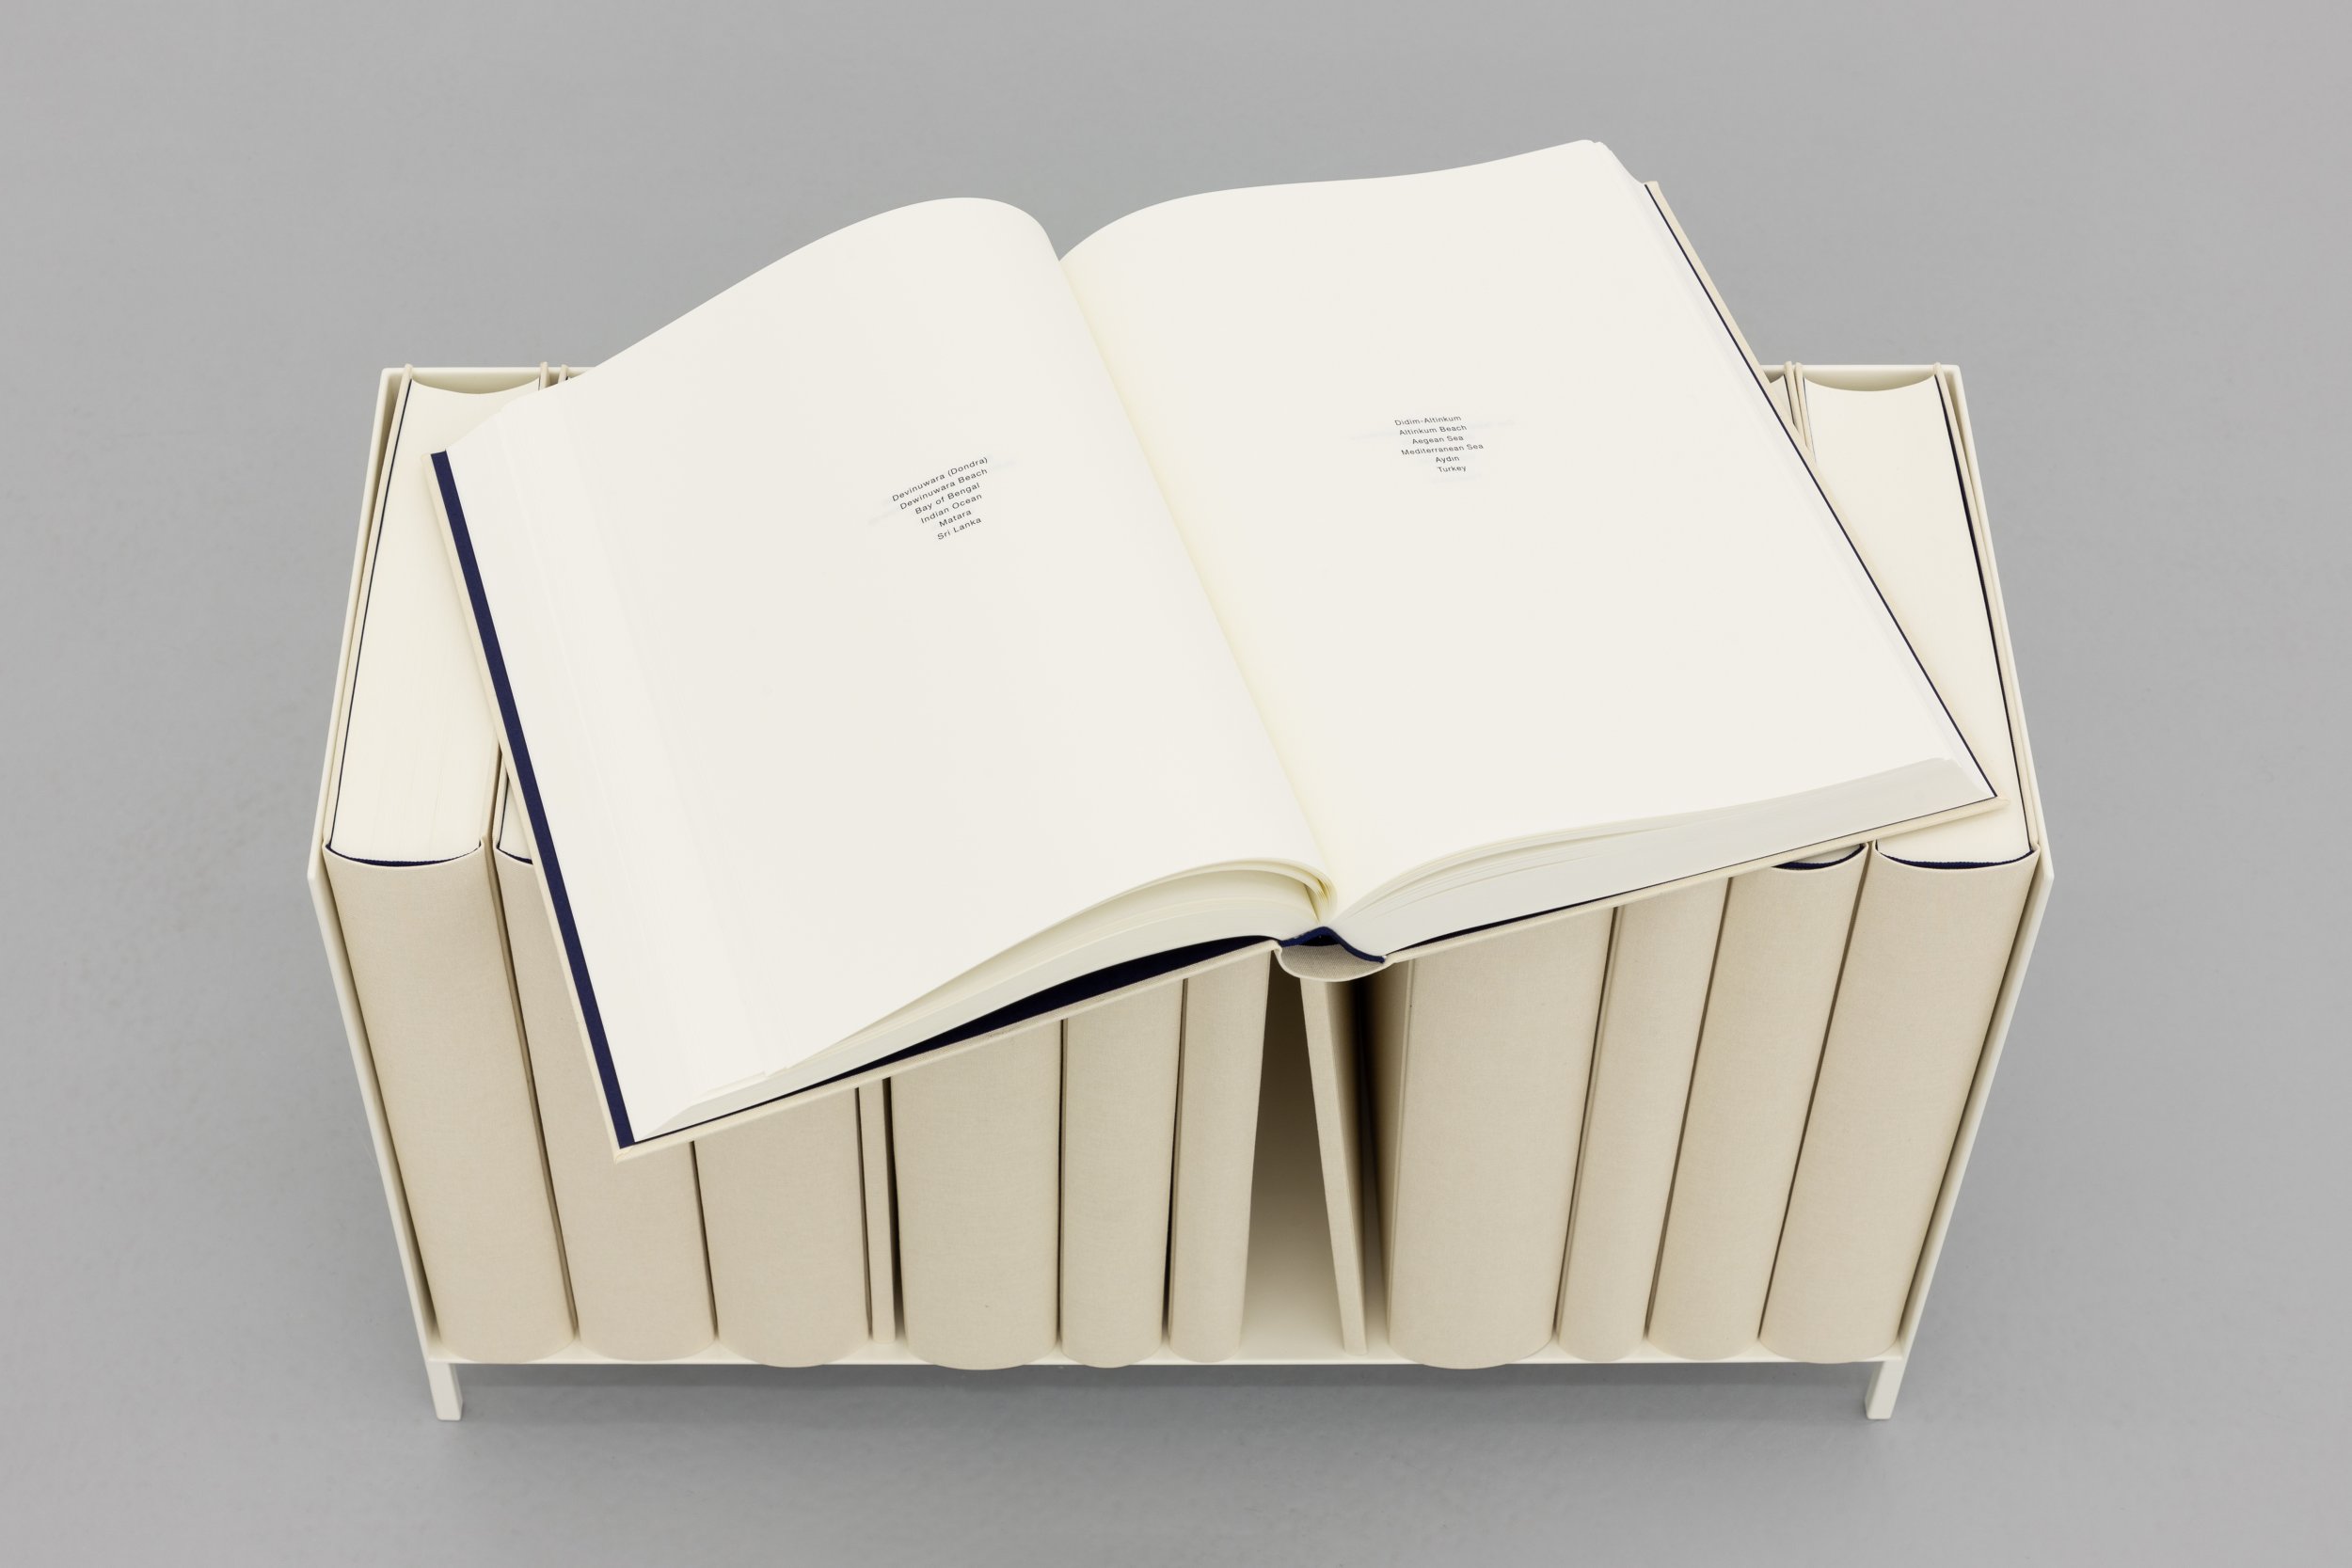 Daniel Gustav Cramer, Sand, 2021 (detail). Shelf, table, 14 books. 103 × 91 × 32.5 cm
